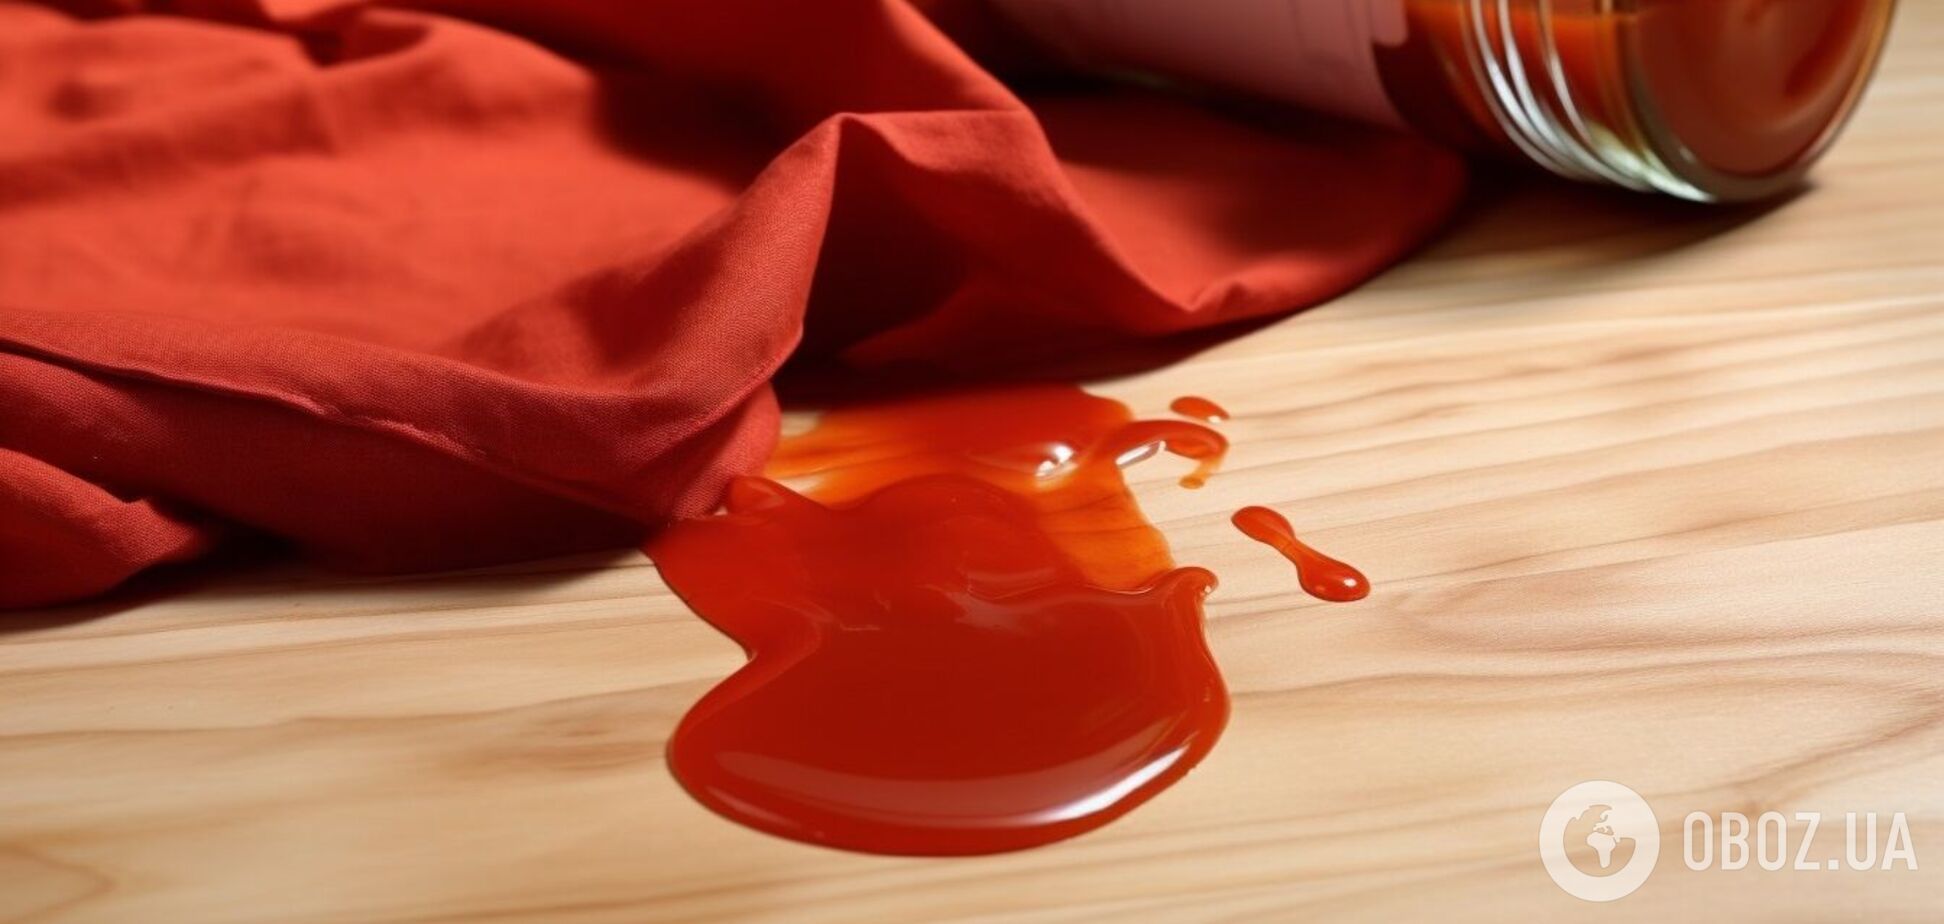 Як відмити томатний соус з одягу чи скатертини: дієвий метод